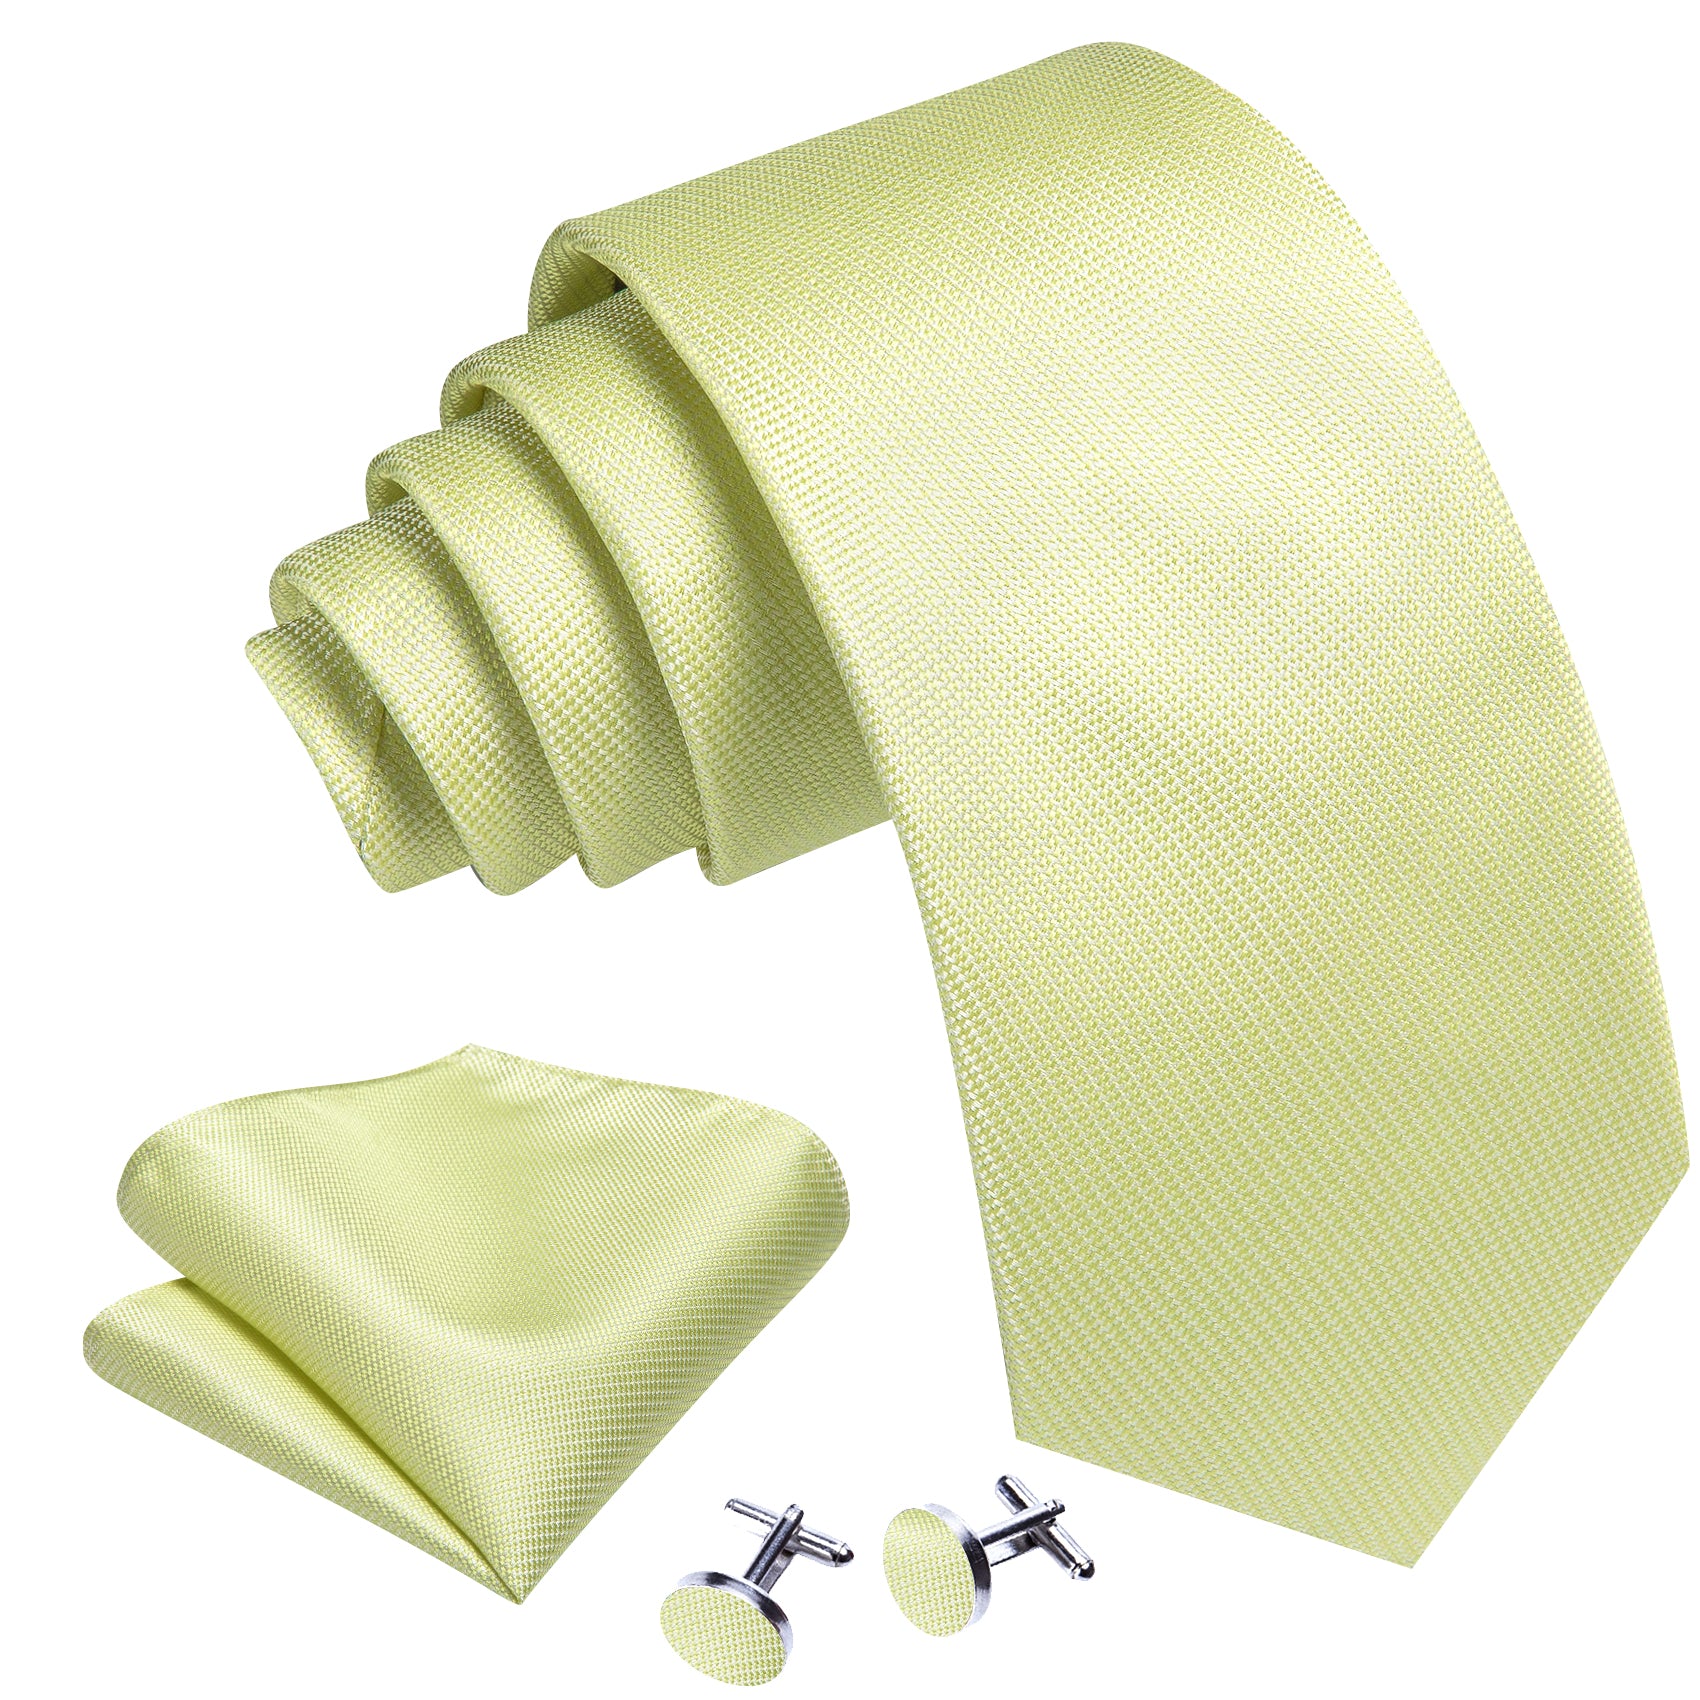  Mist Green Solid Silk Tie Handkerchief Cufflinks Set